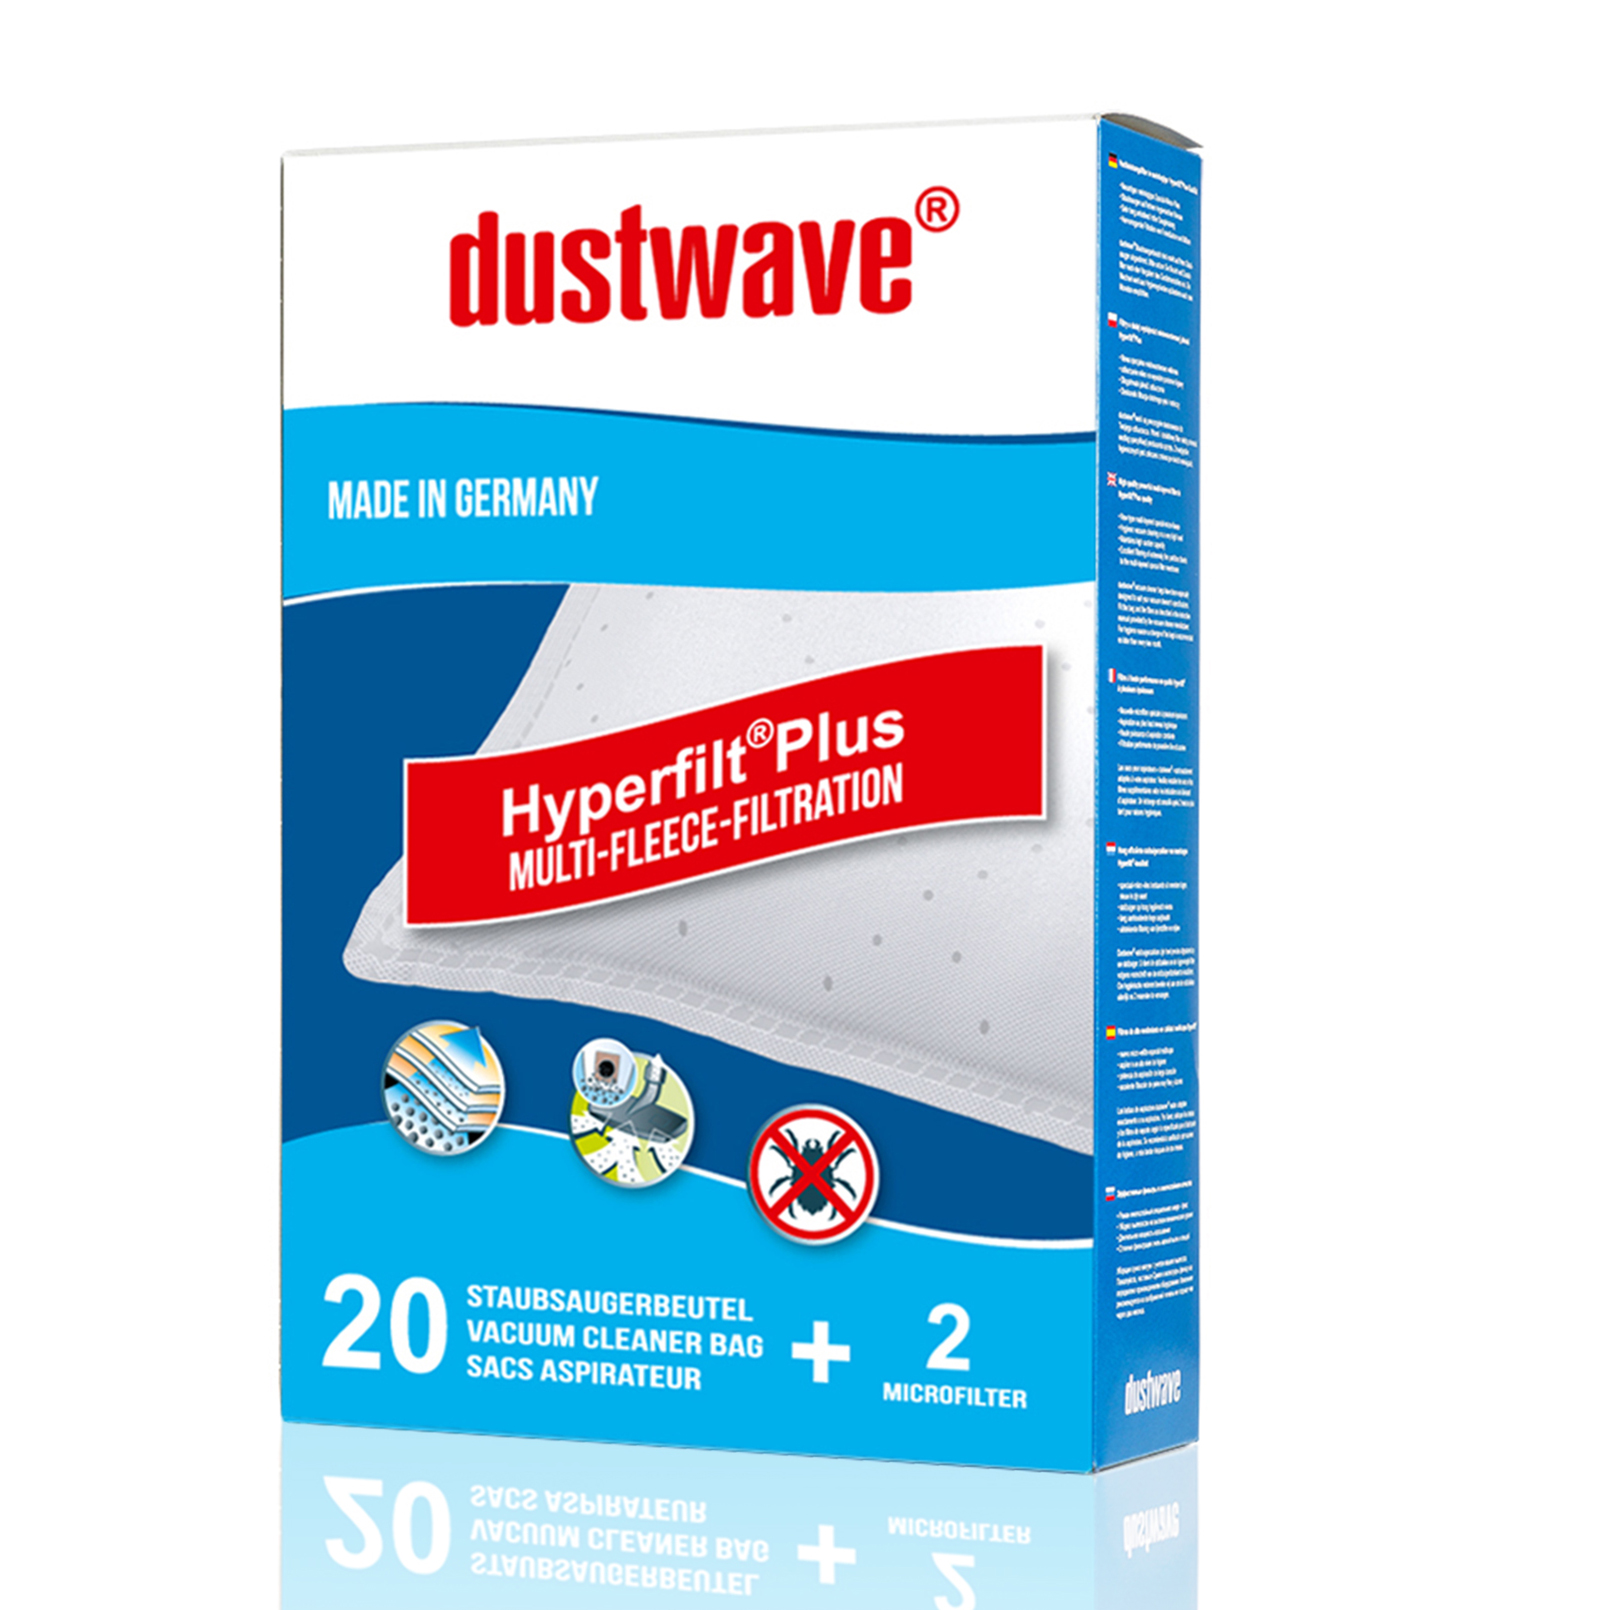 Dustwave® 5 Staubsaugerbeutel für Miele Cat &amp; Dog 800 - hocheffizient, mehrlagiges Mikrovlies mit Hygieneverschluss - Made in Germany